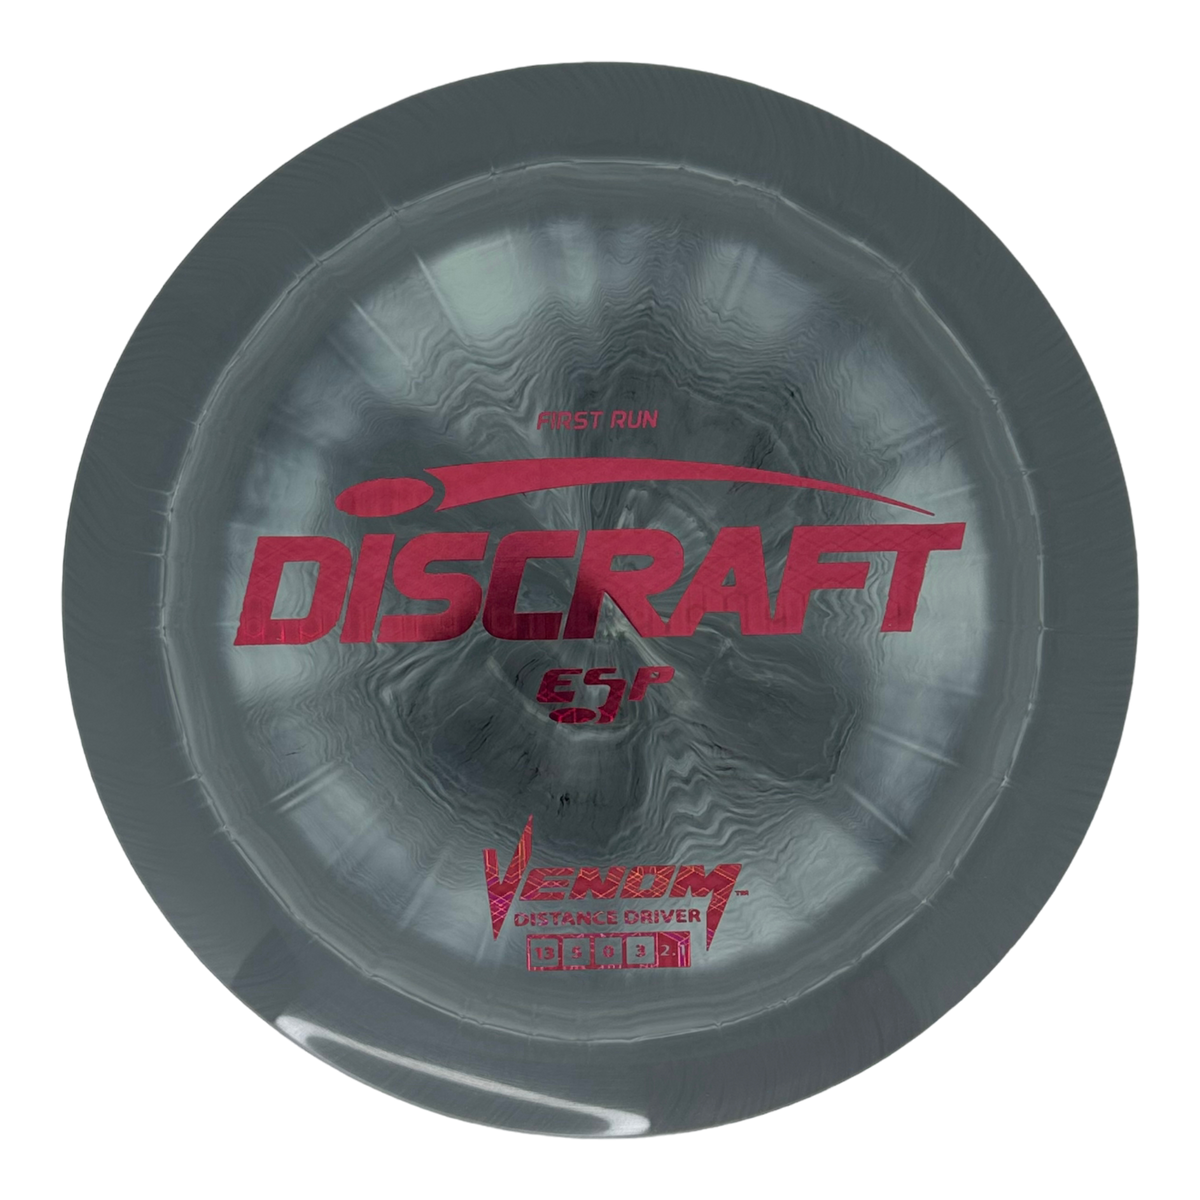 Discraft ESP Venom - First Run